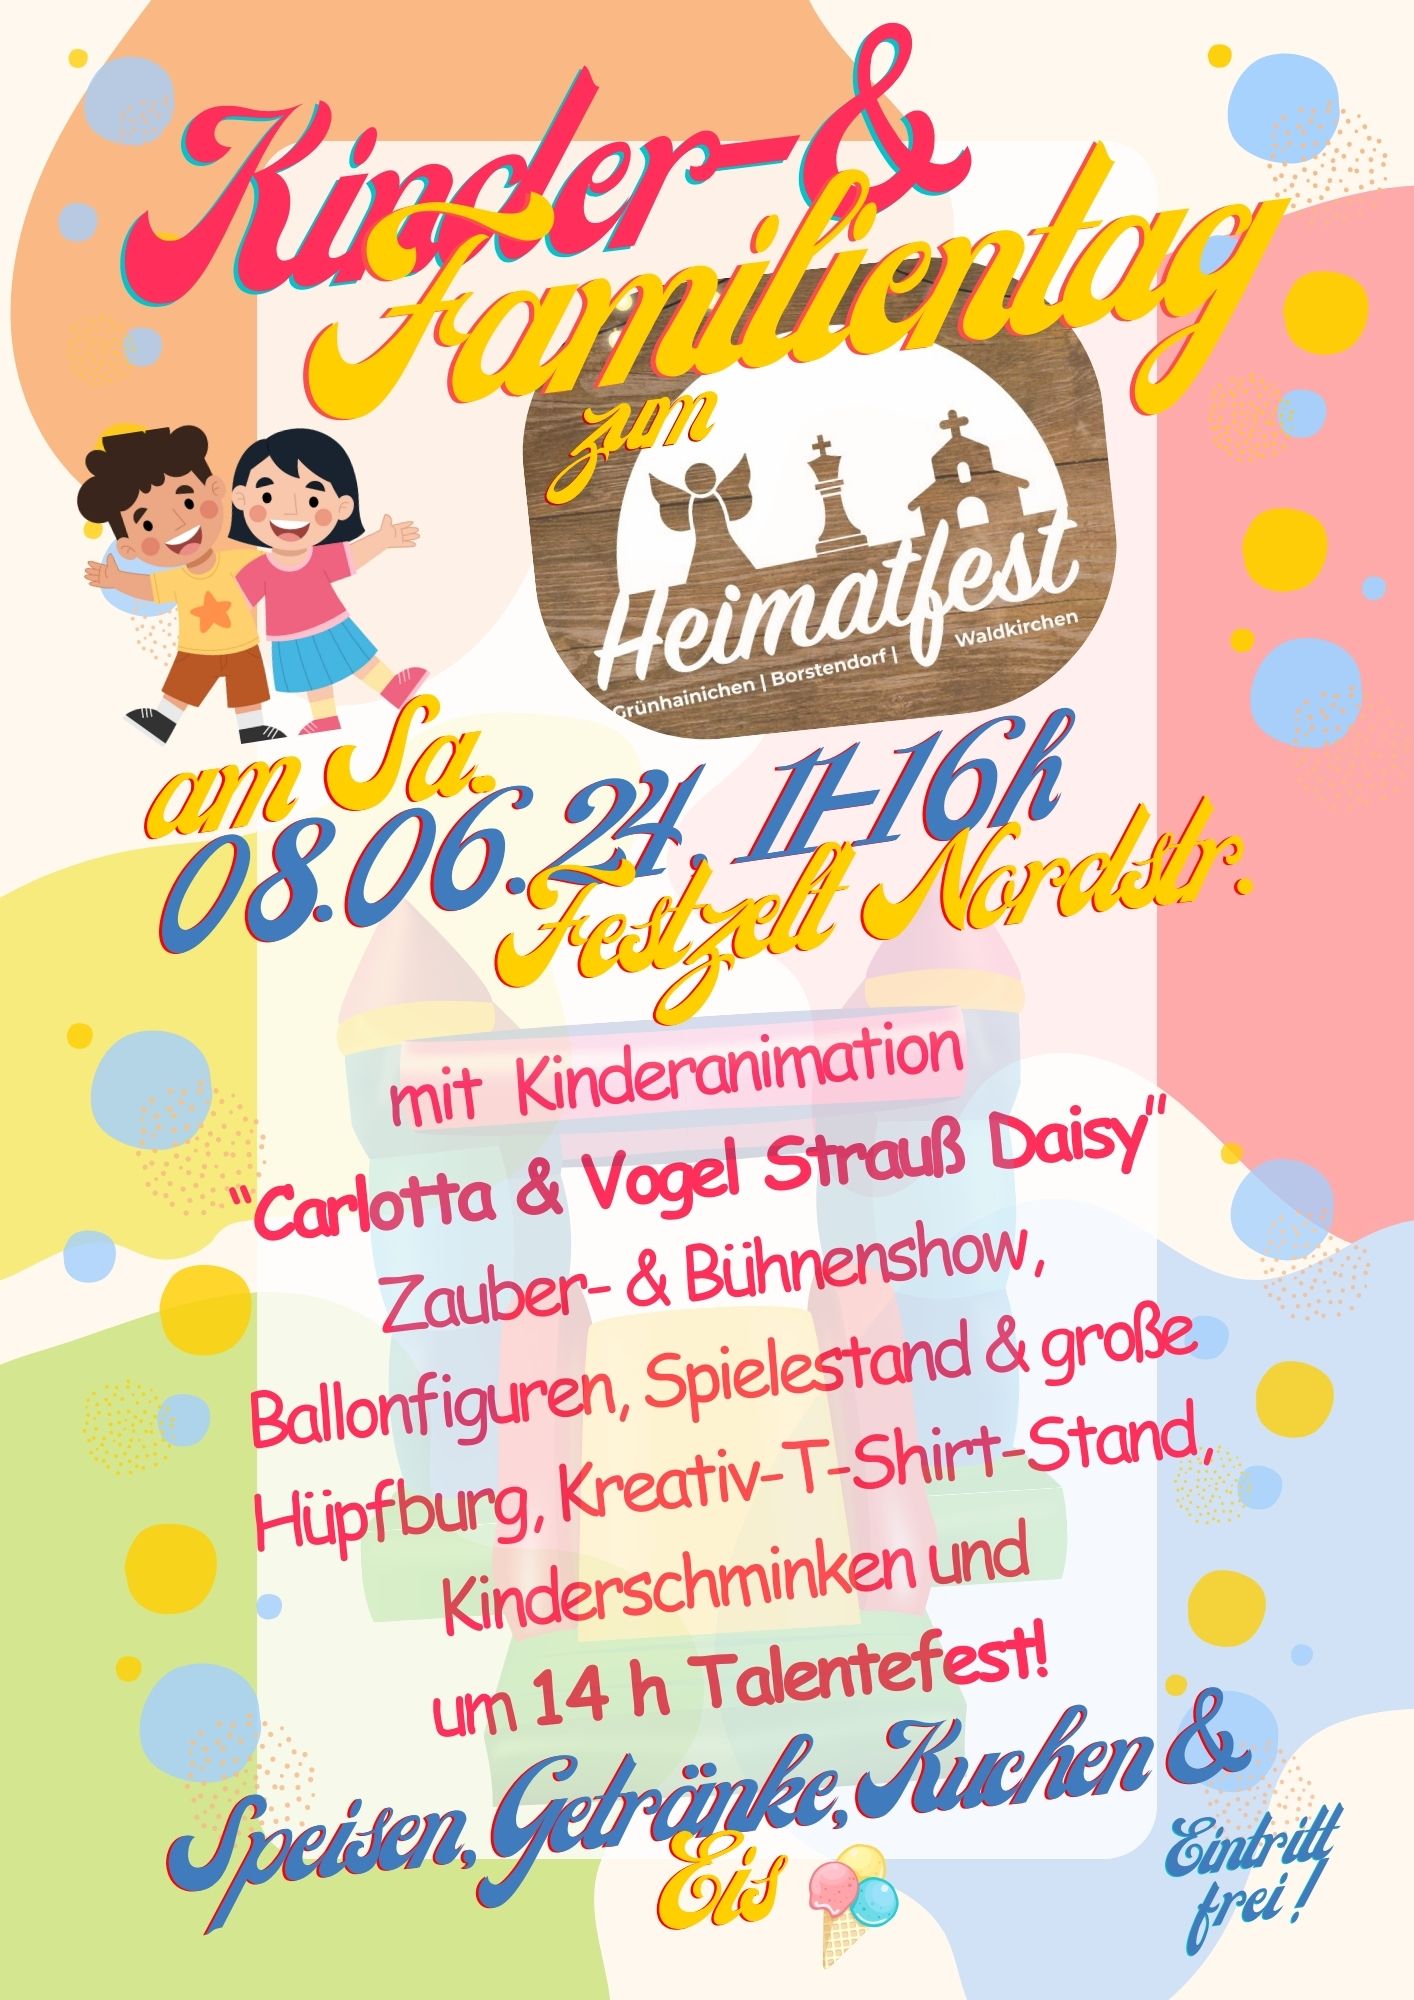 HEIMATFEST - tagsüber großer Familientag in Grünhainichen am 08.06.2024